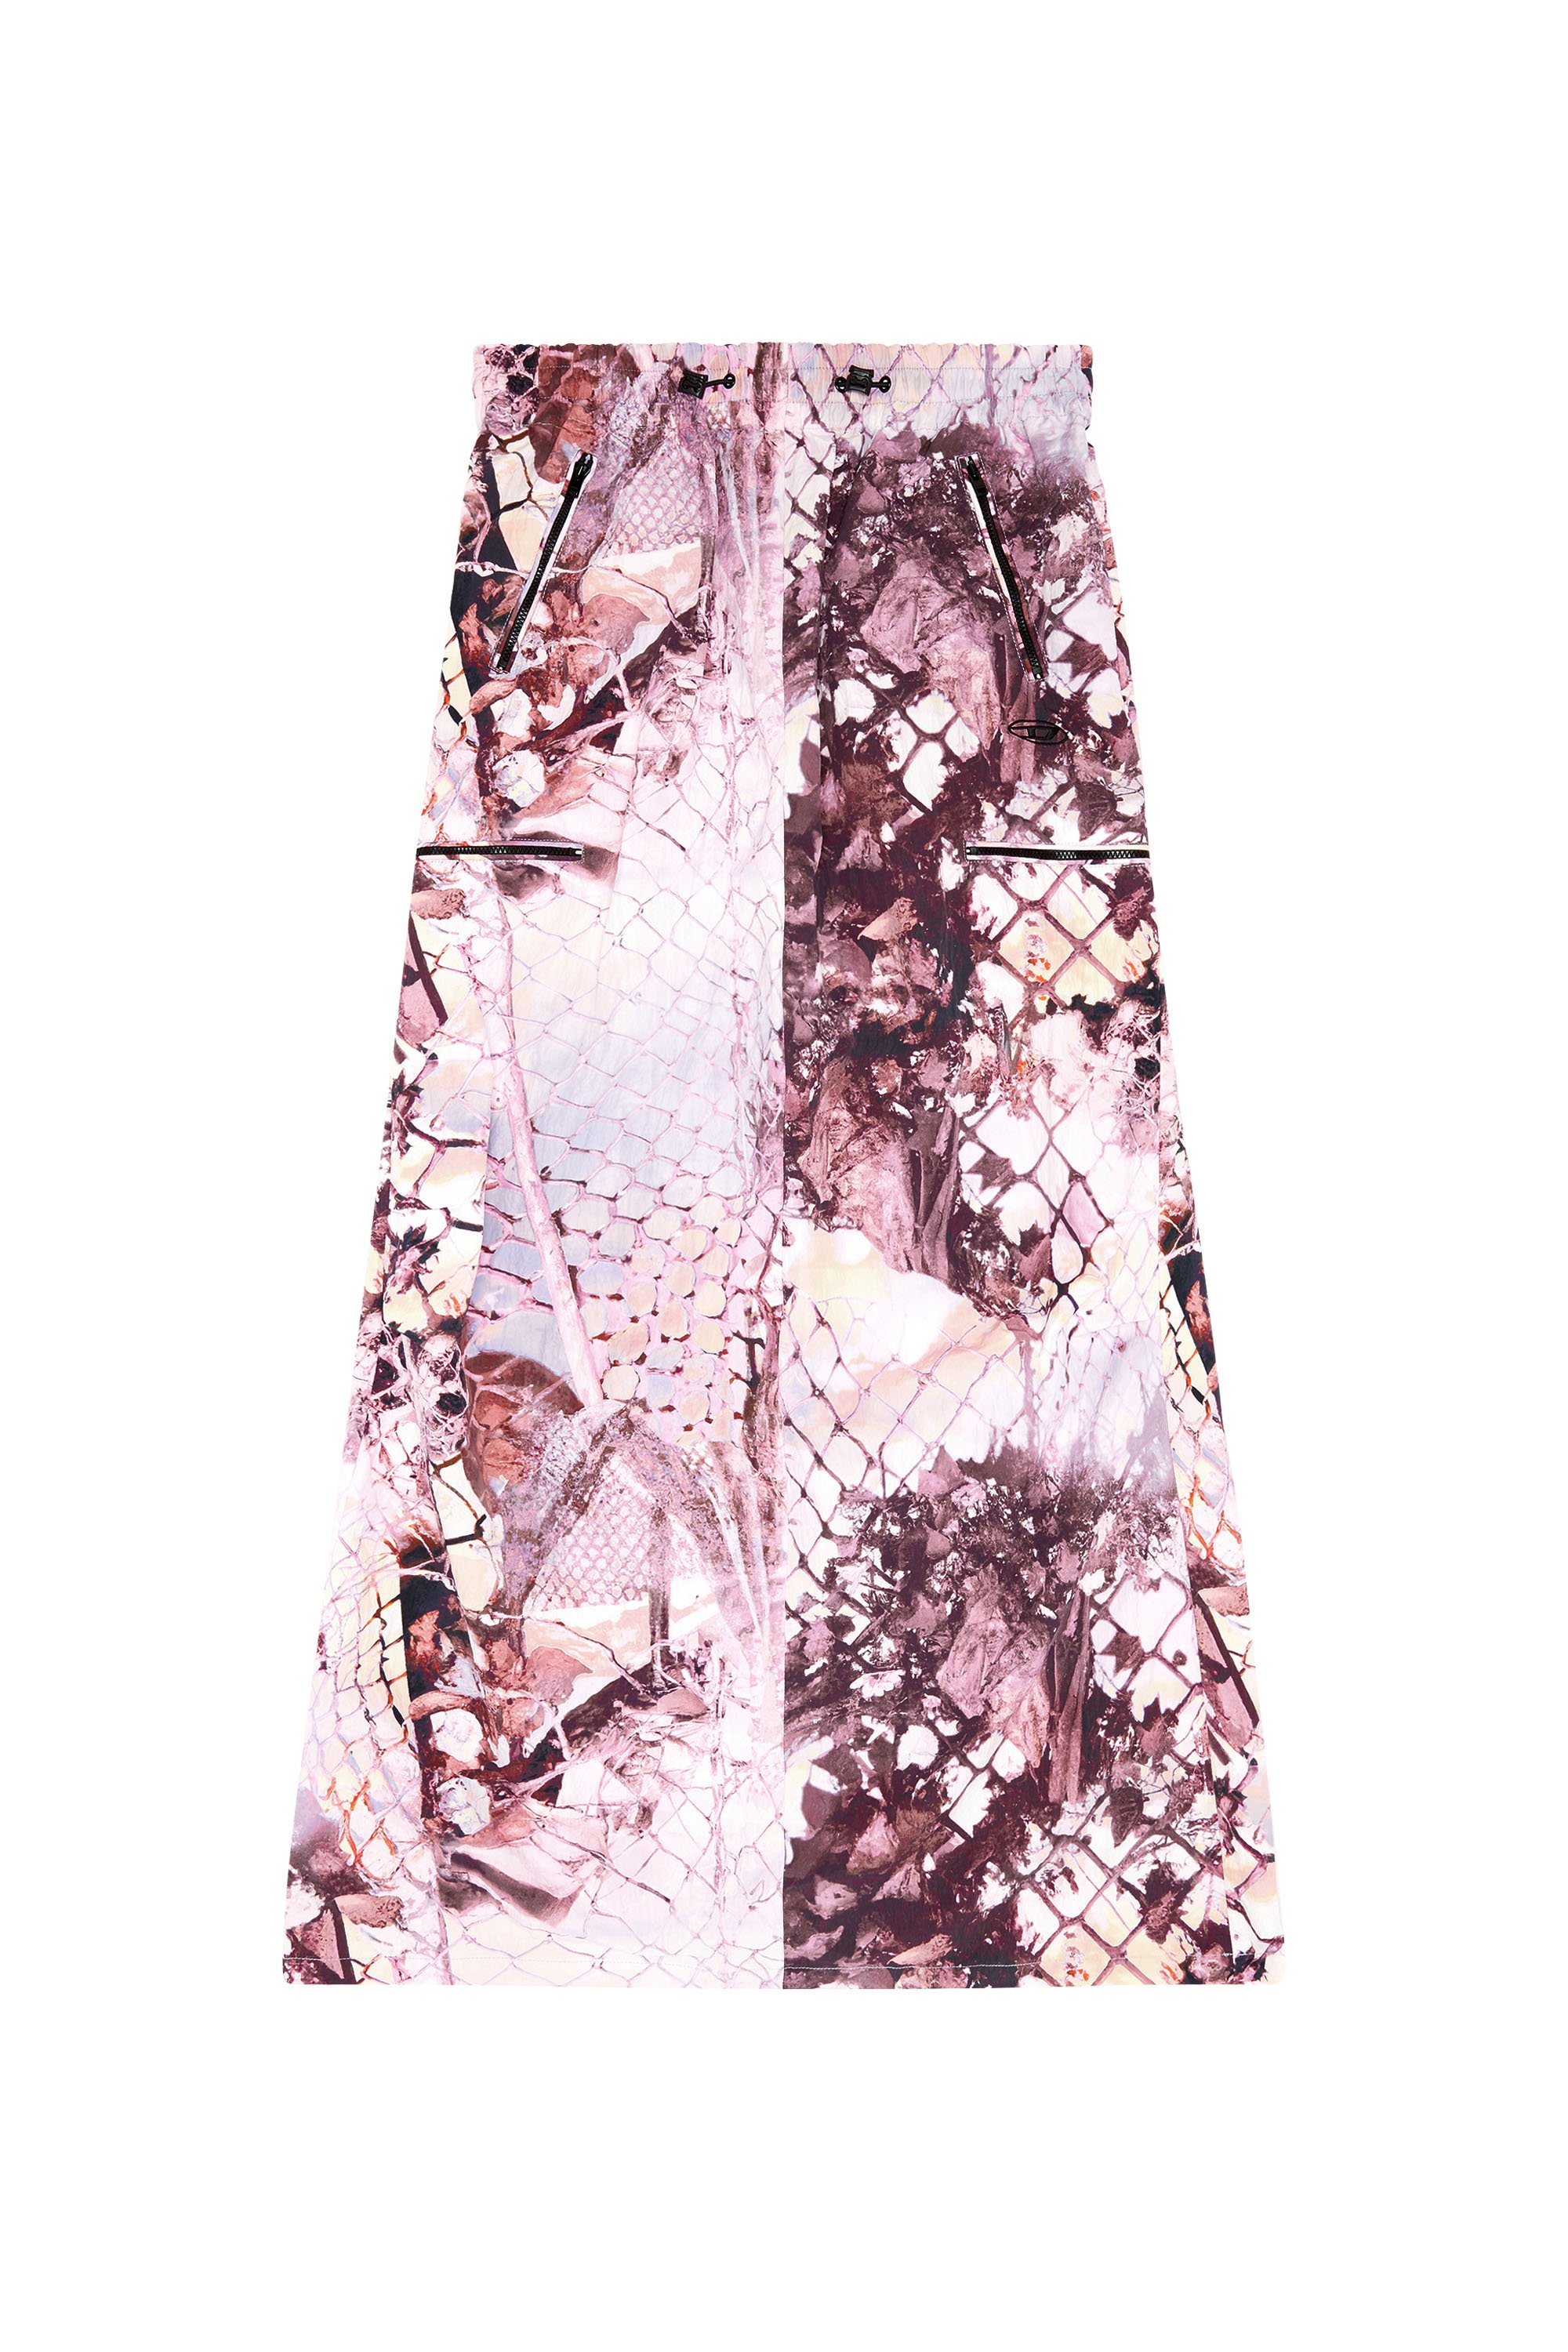 Diesel - O-DIAMY-N1, Female Long skirt in printed crinkled nylon in Violet - Image 3